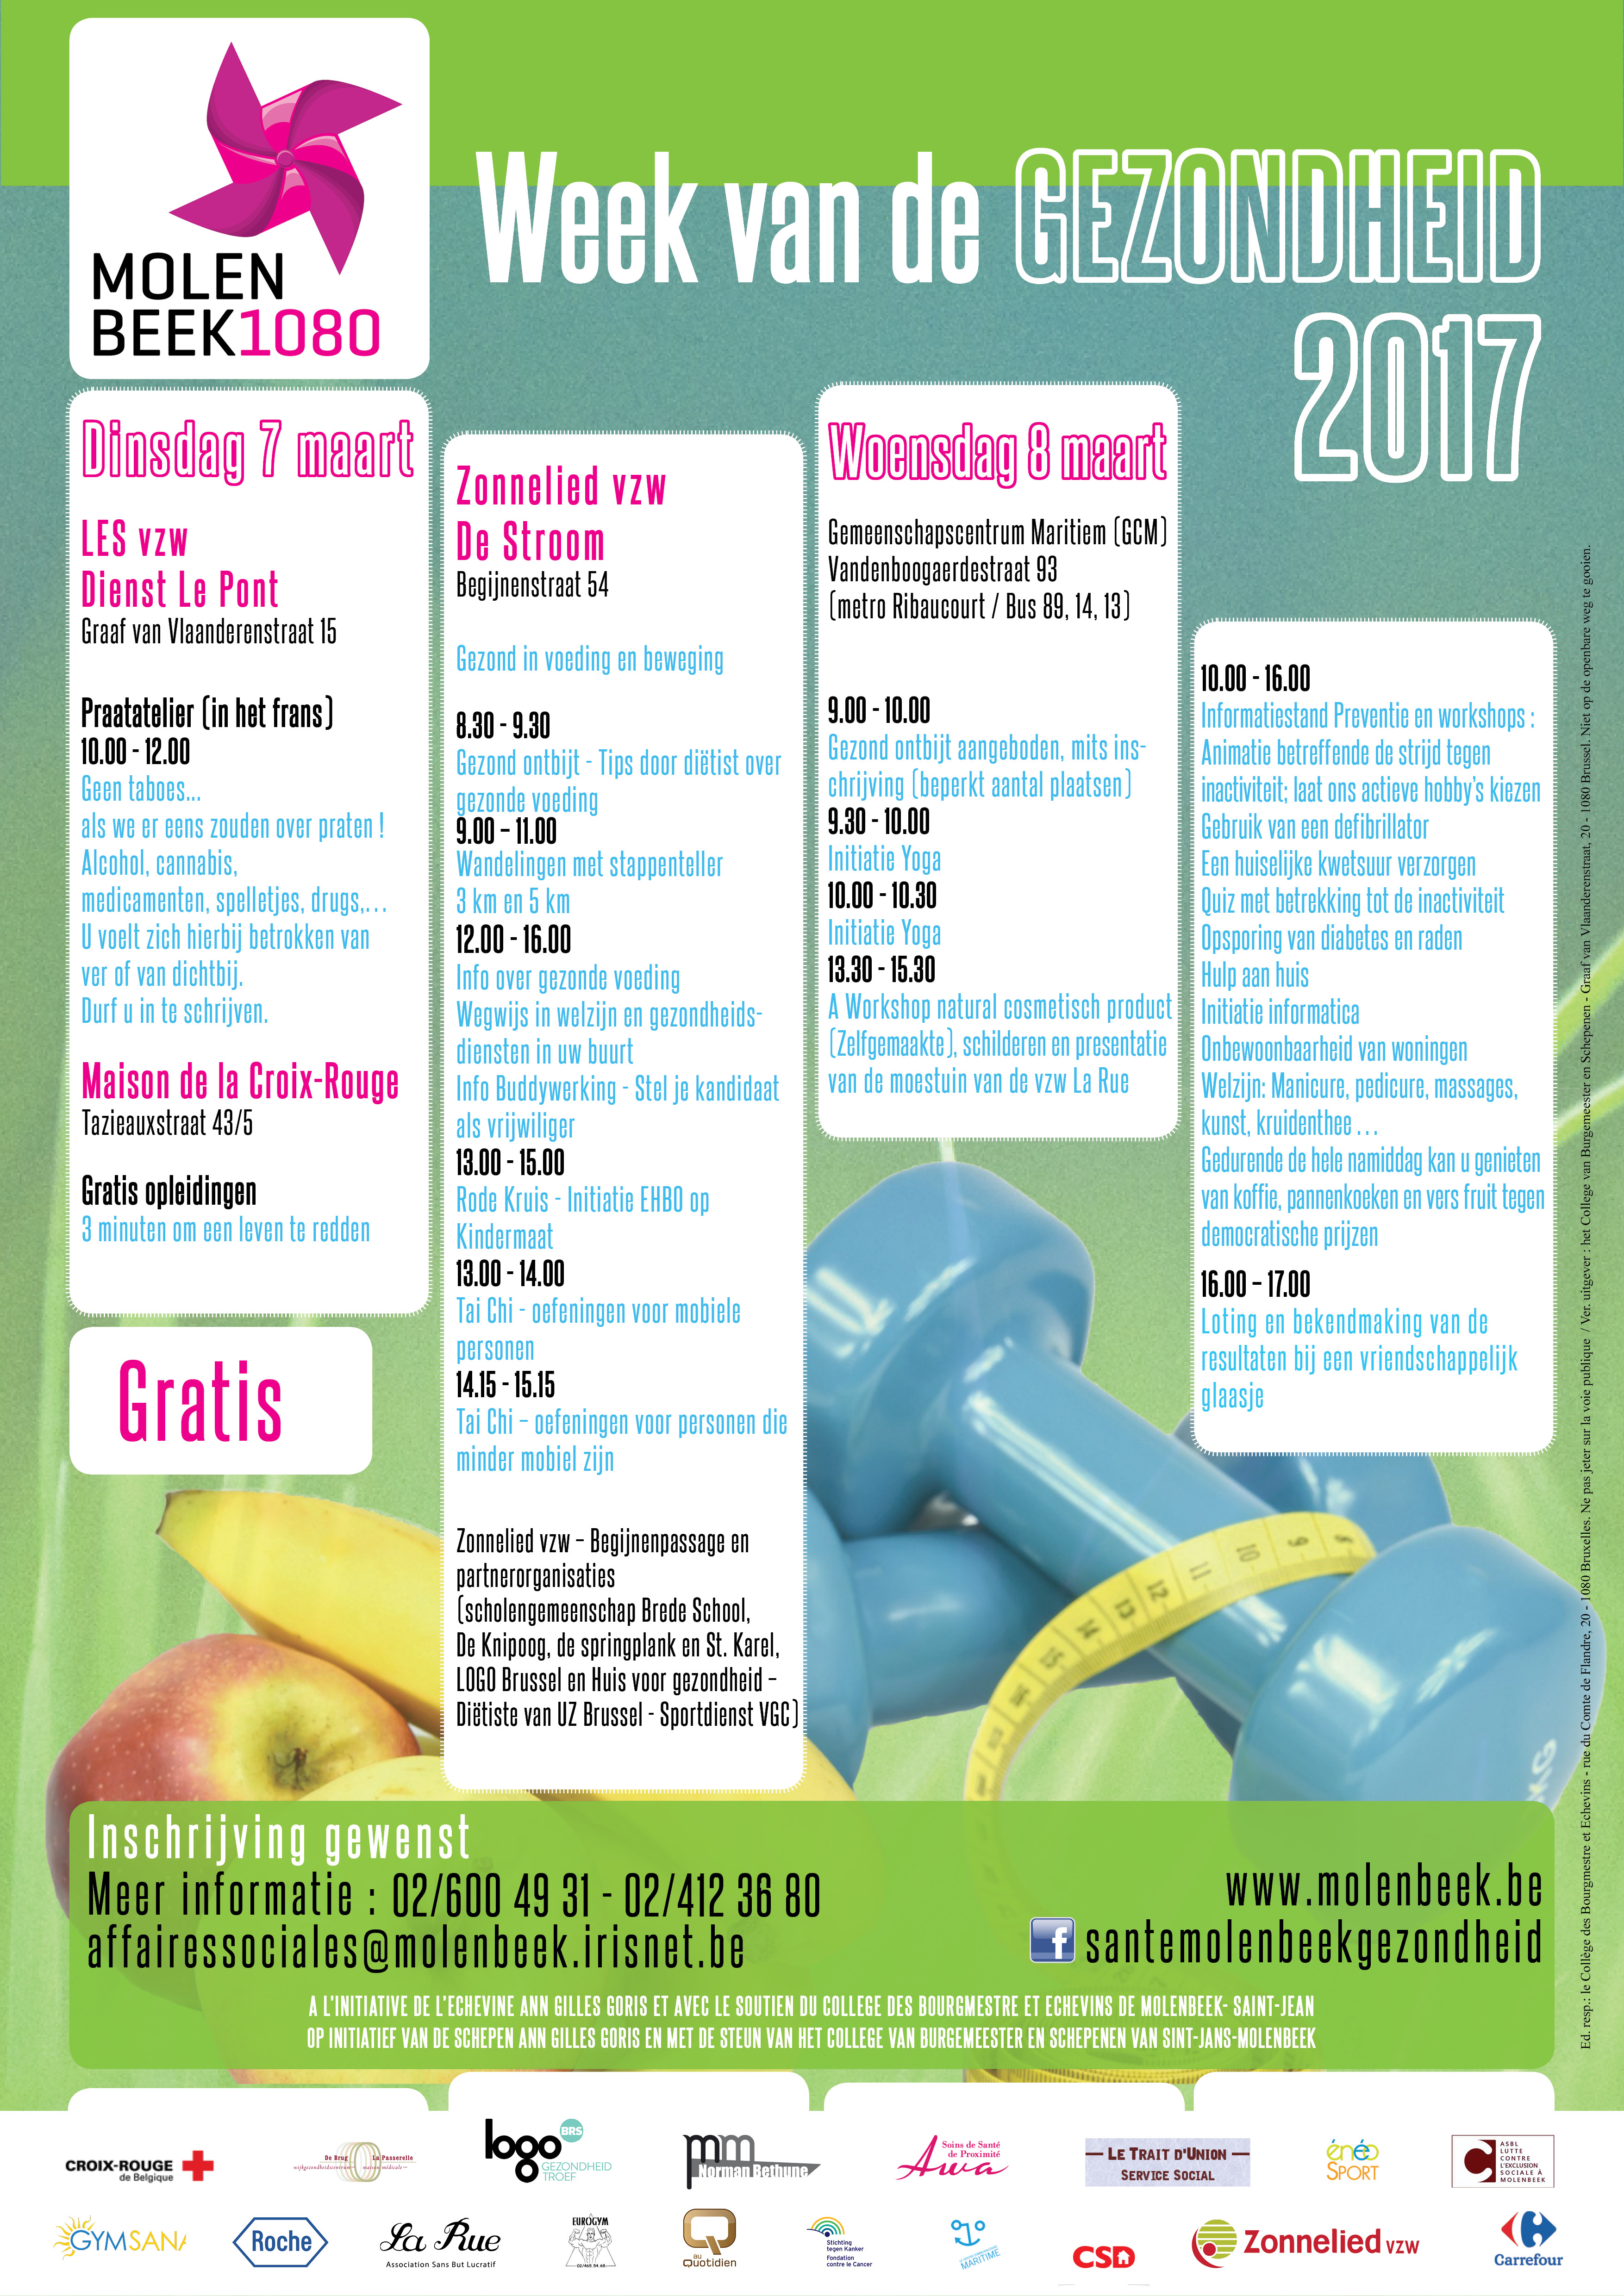 Programme A3 de La semaine de la Santé nl 21022017 V01